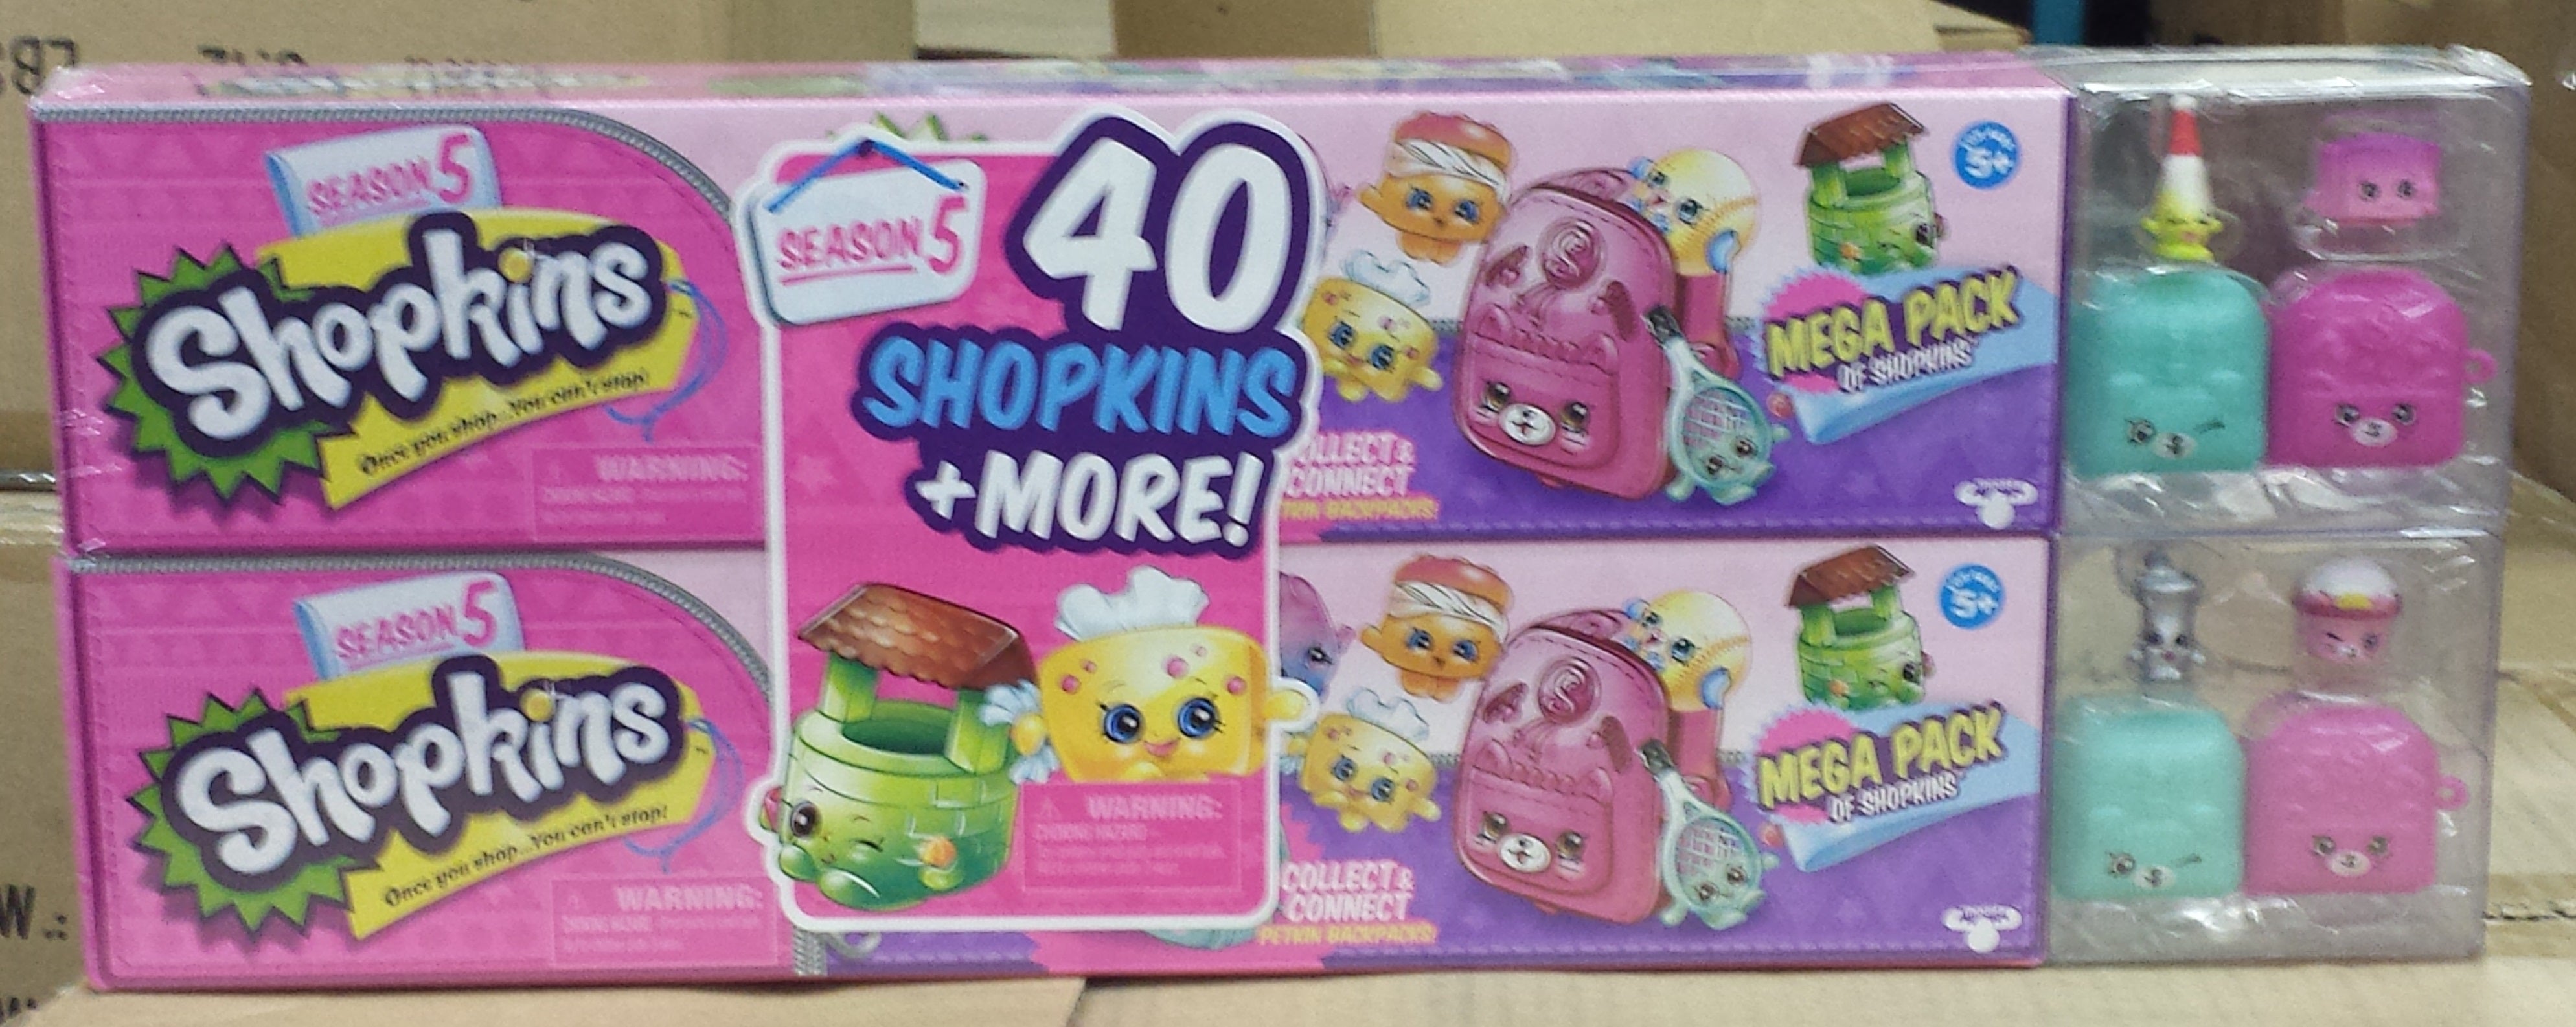 Shopkins Season 5 DOUBLE Mega Pack, Over 40 Shopkins